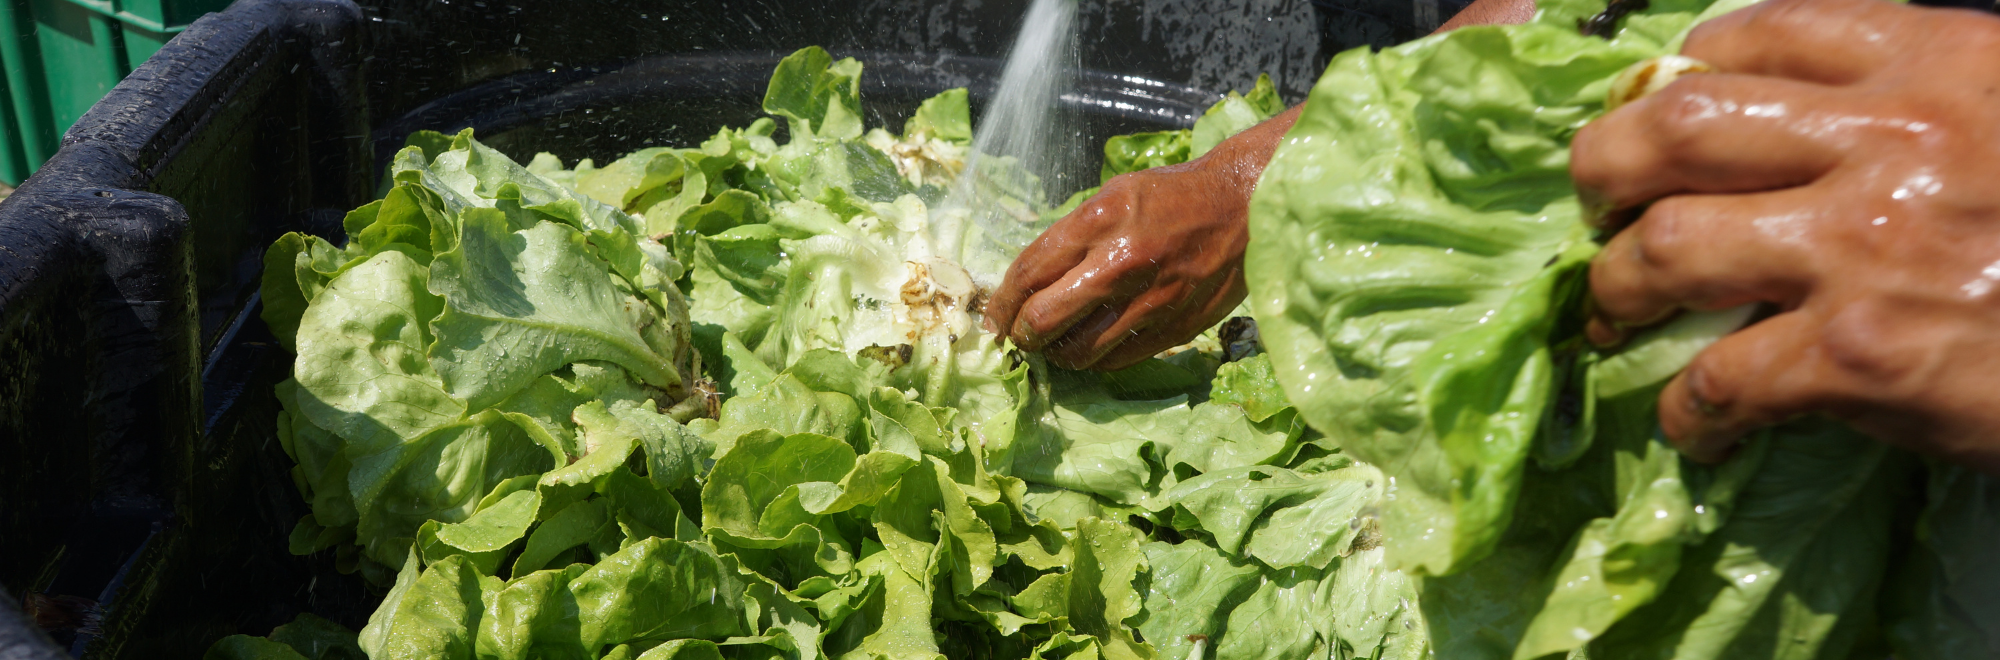 washing lettuce on a farm